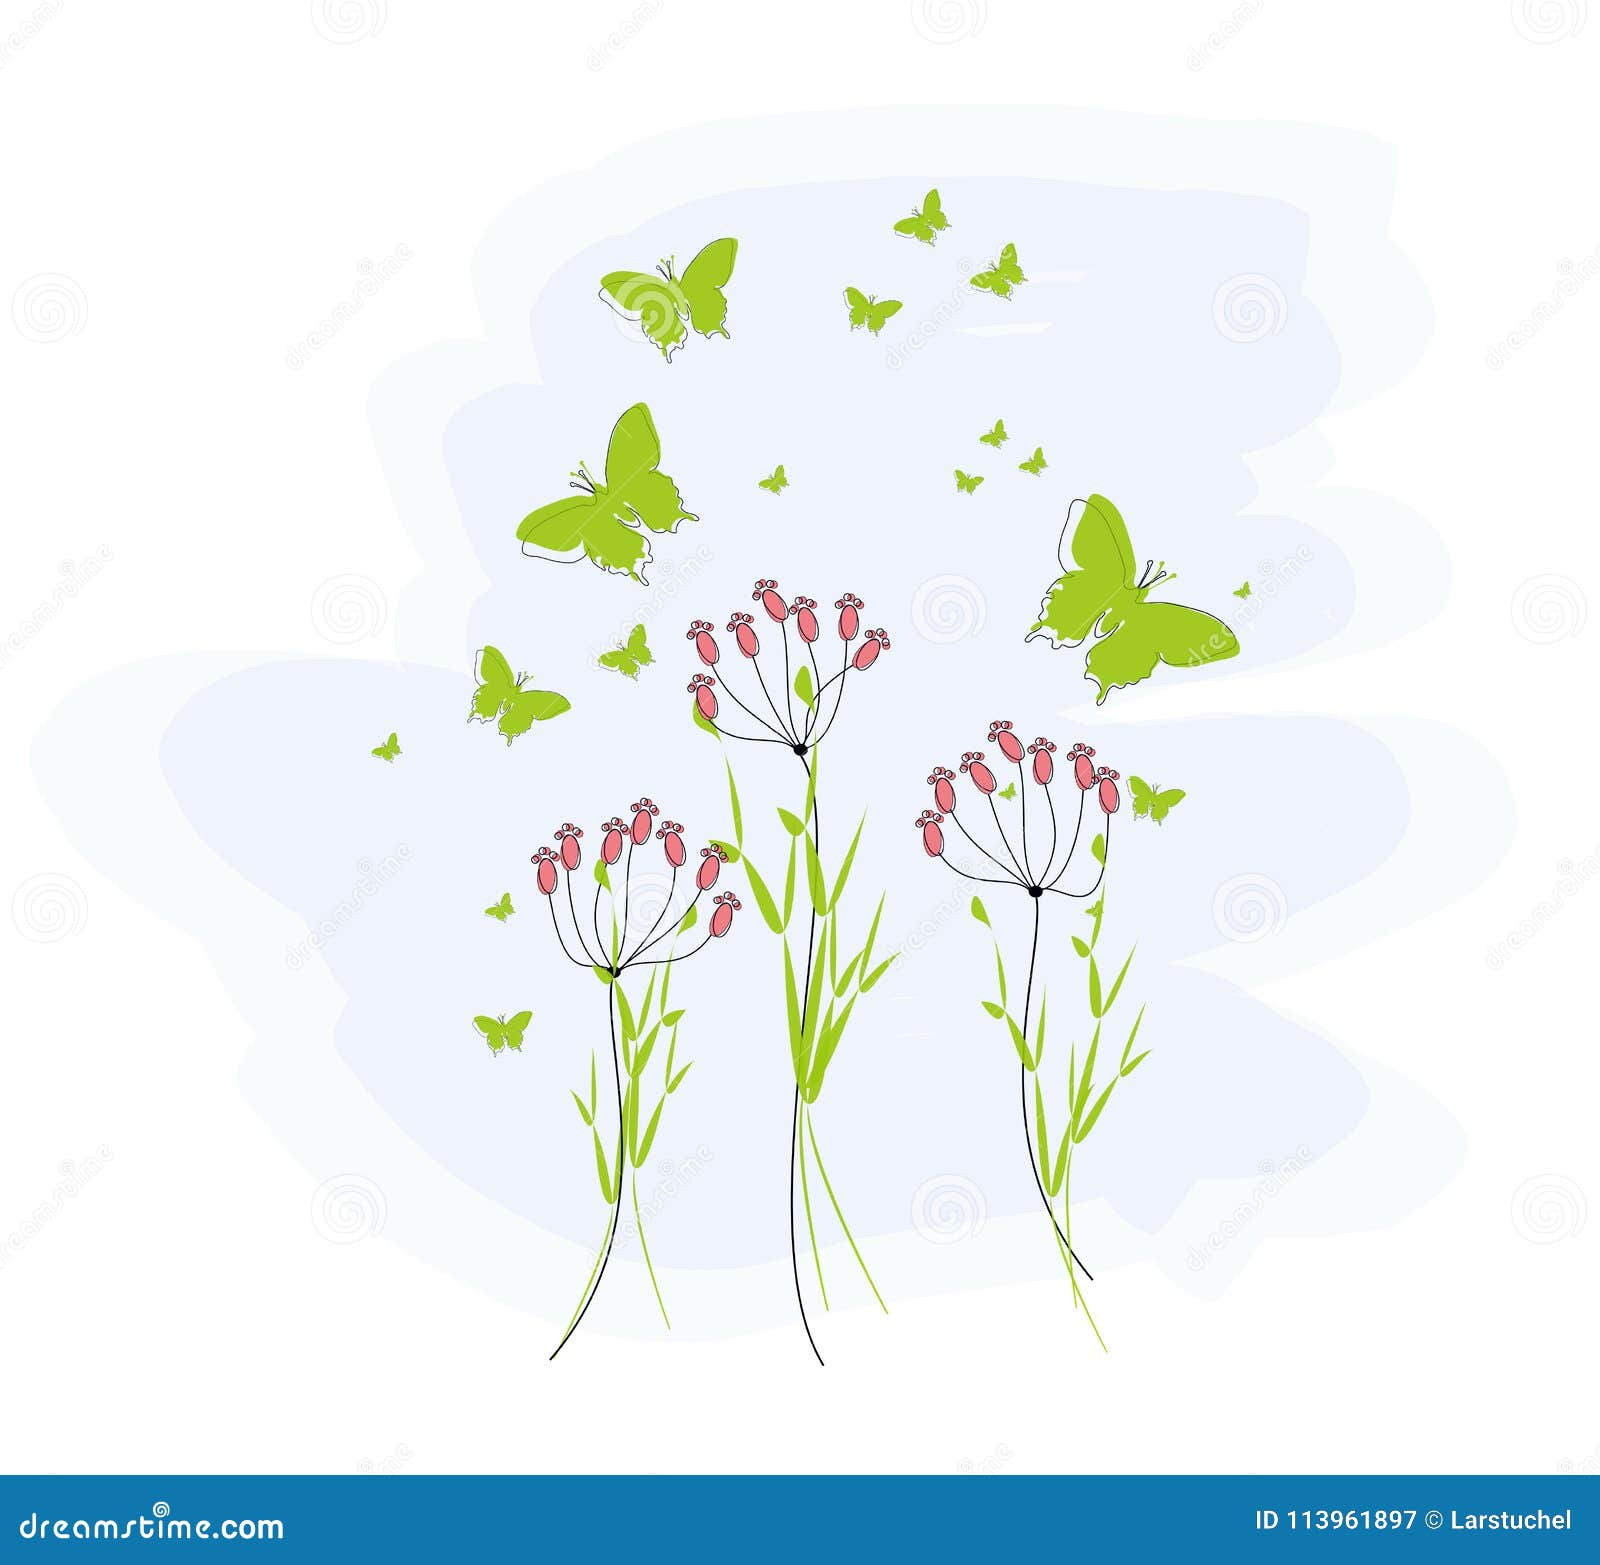 Grüne Schmetterlinge für Grußkarten. Grüne Schmetterlinge mit purpurroten Blumen und Gräsern für Grußkarten und andere Art Karten